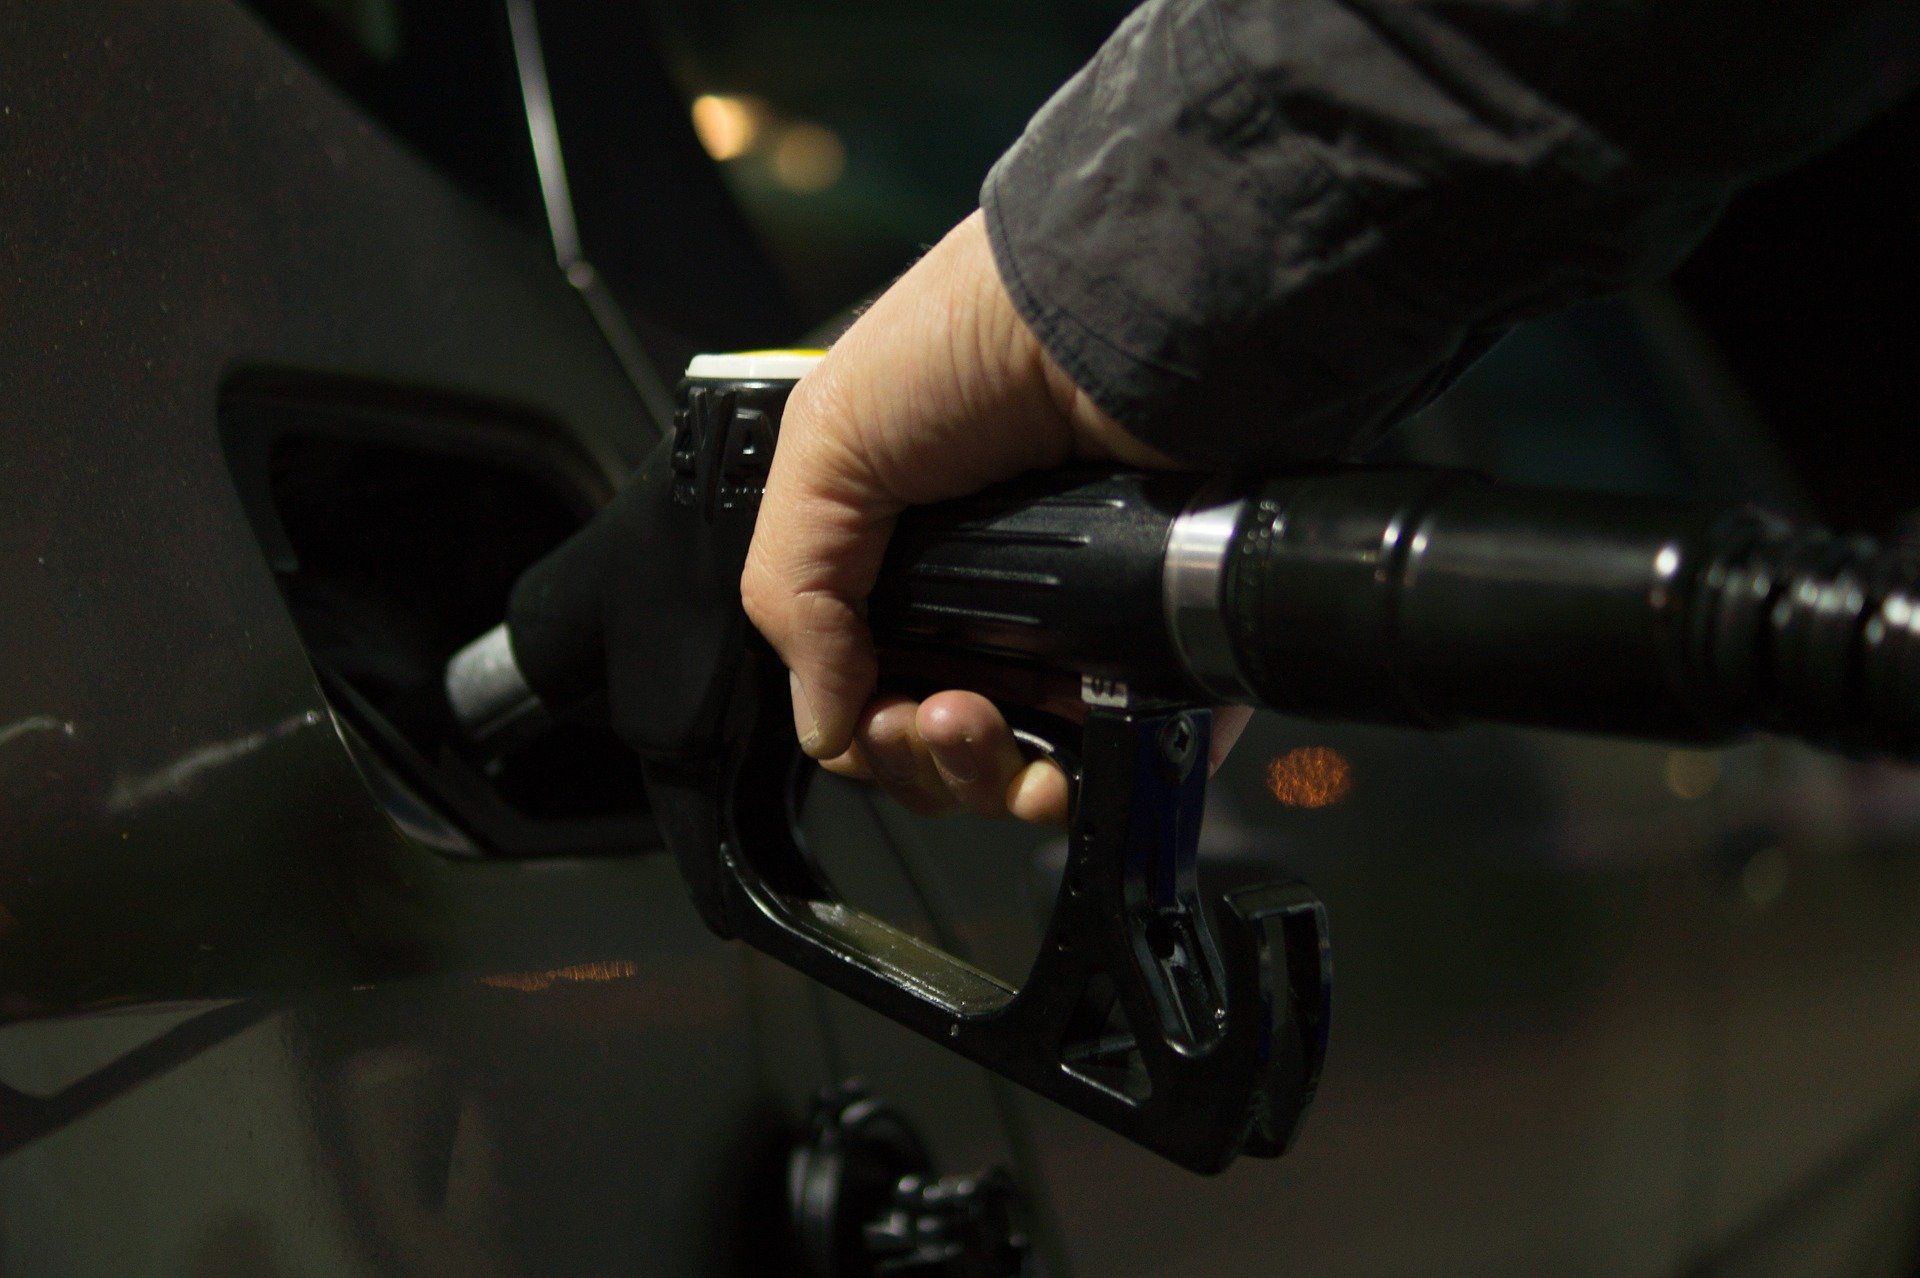 Fuel price August 11, 2022: Petrol Rs 106.31, diesel Rs 94.27 in Mumbai